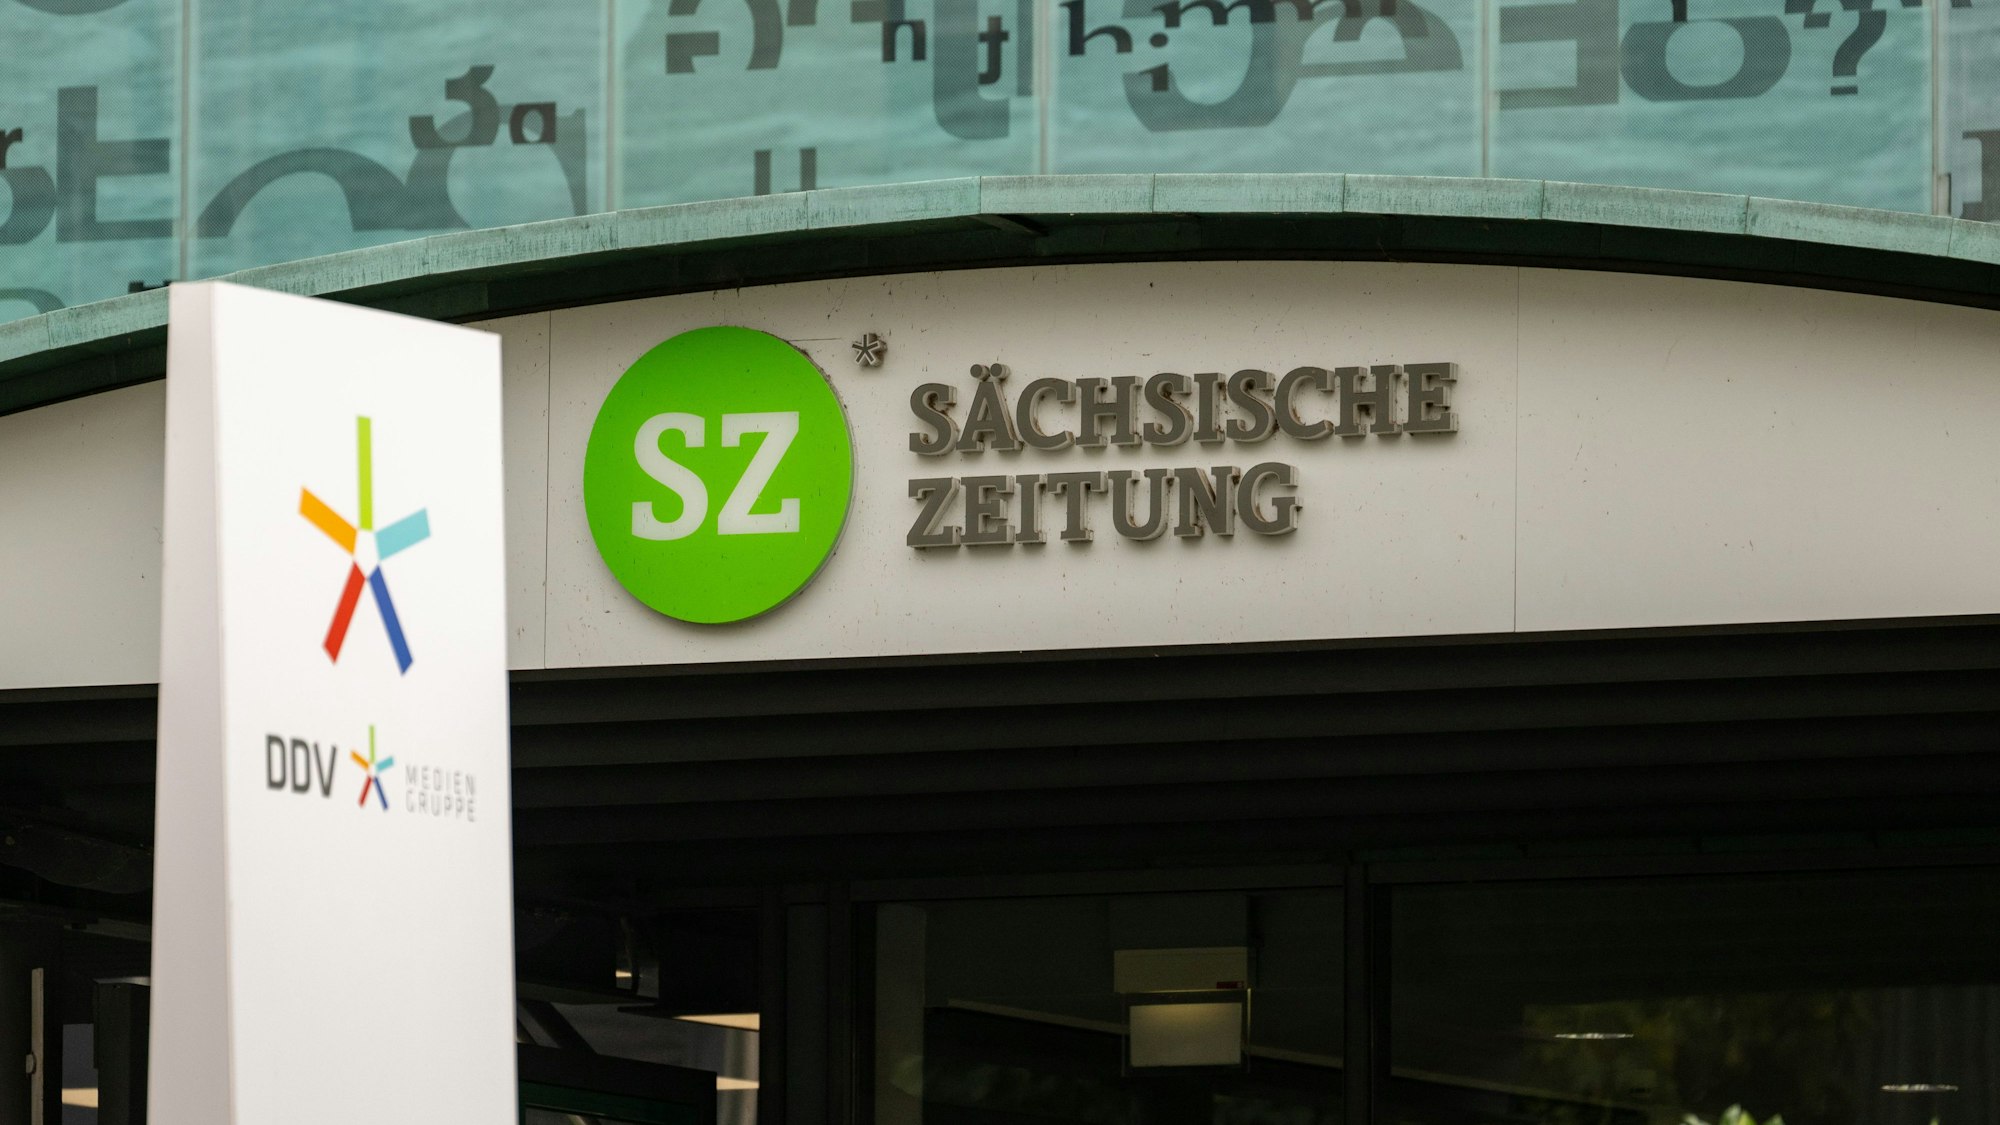 Der Schriftzug «Sächsische Zeitung» steht über dem Eingang am Haus der Presse, dem Sitz DDV Mediengruppe.